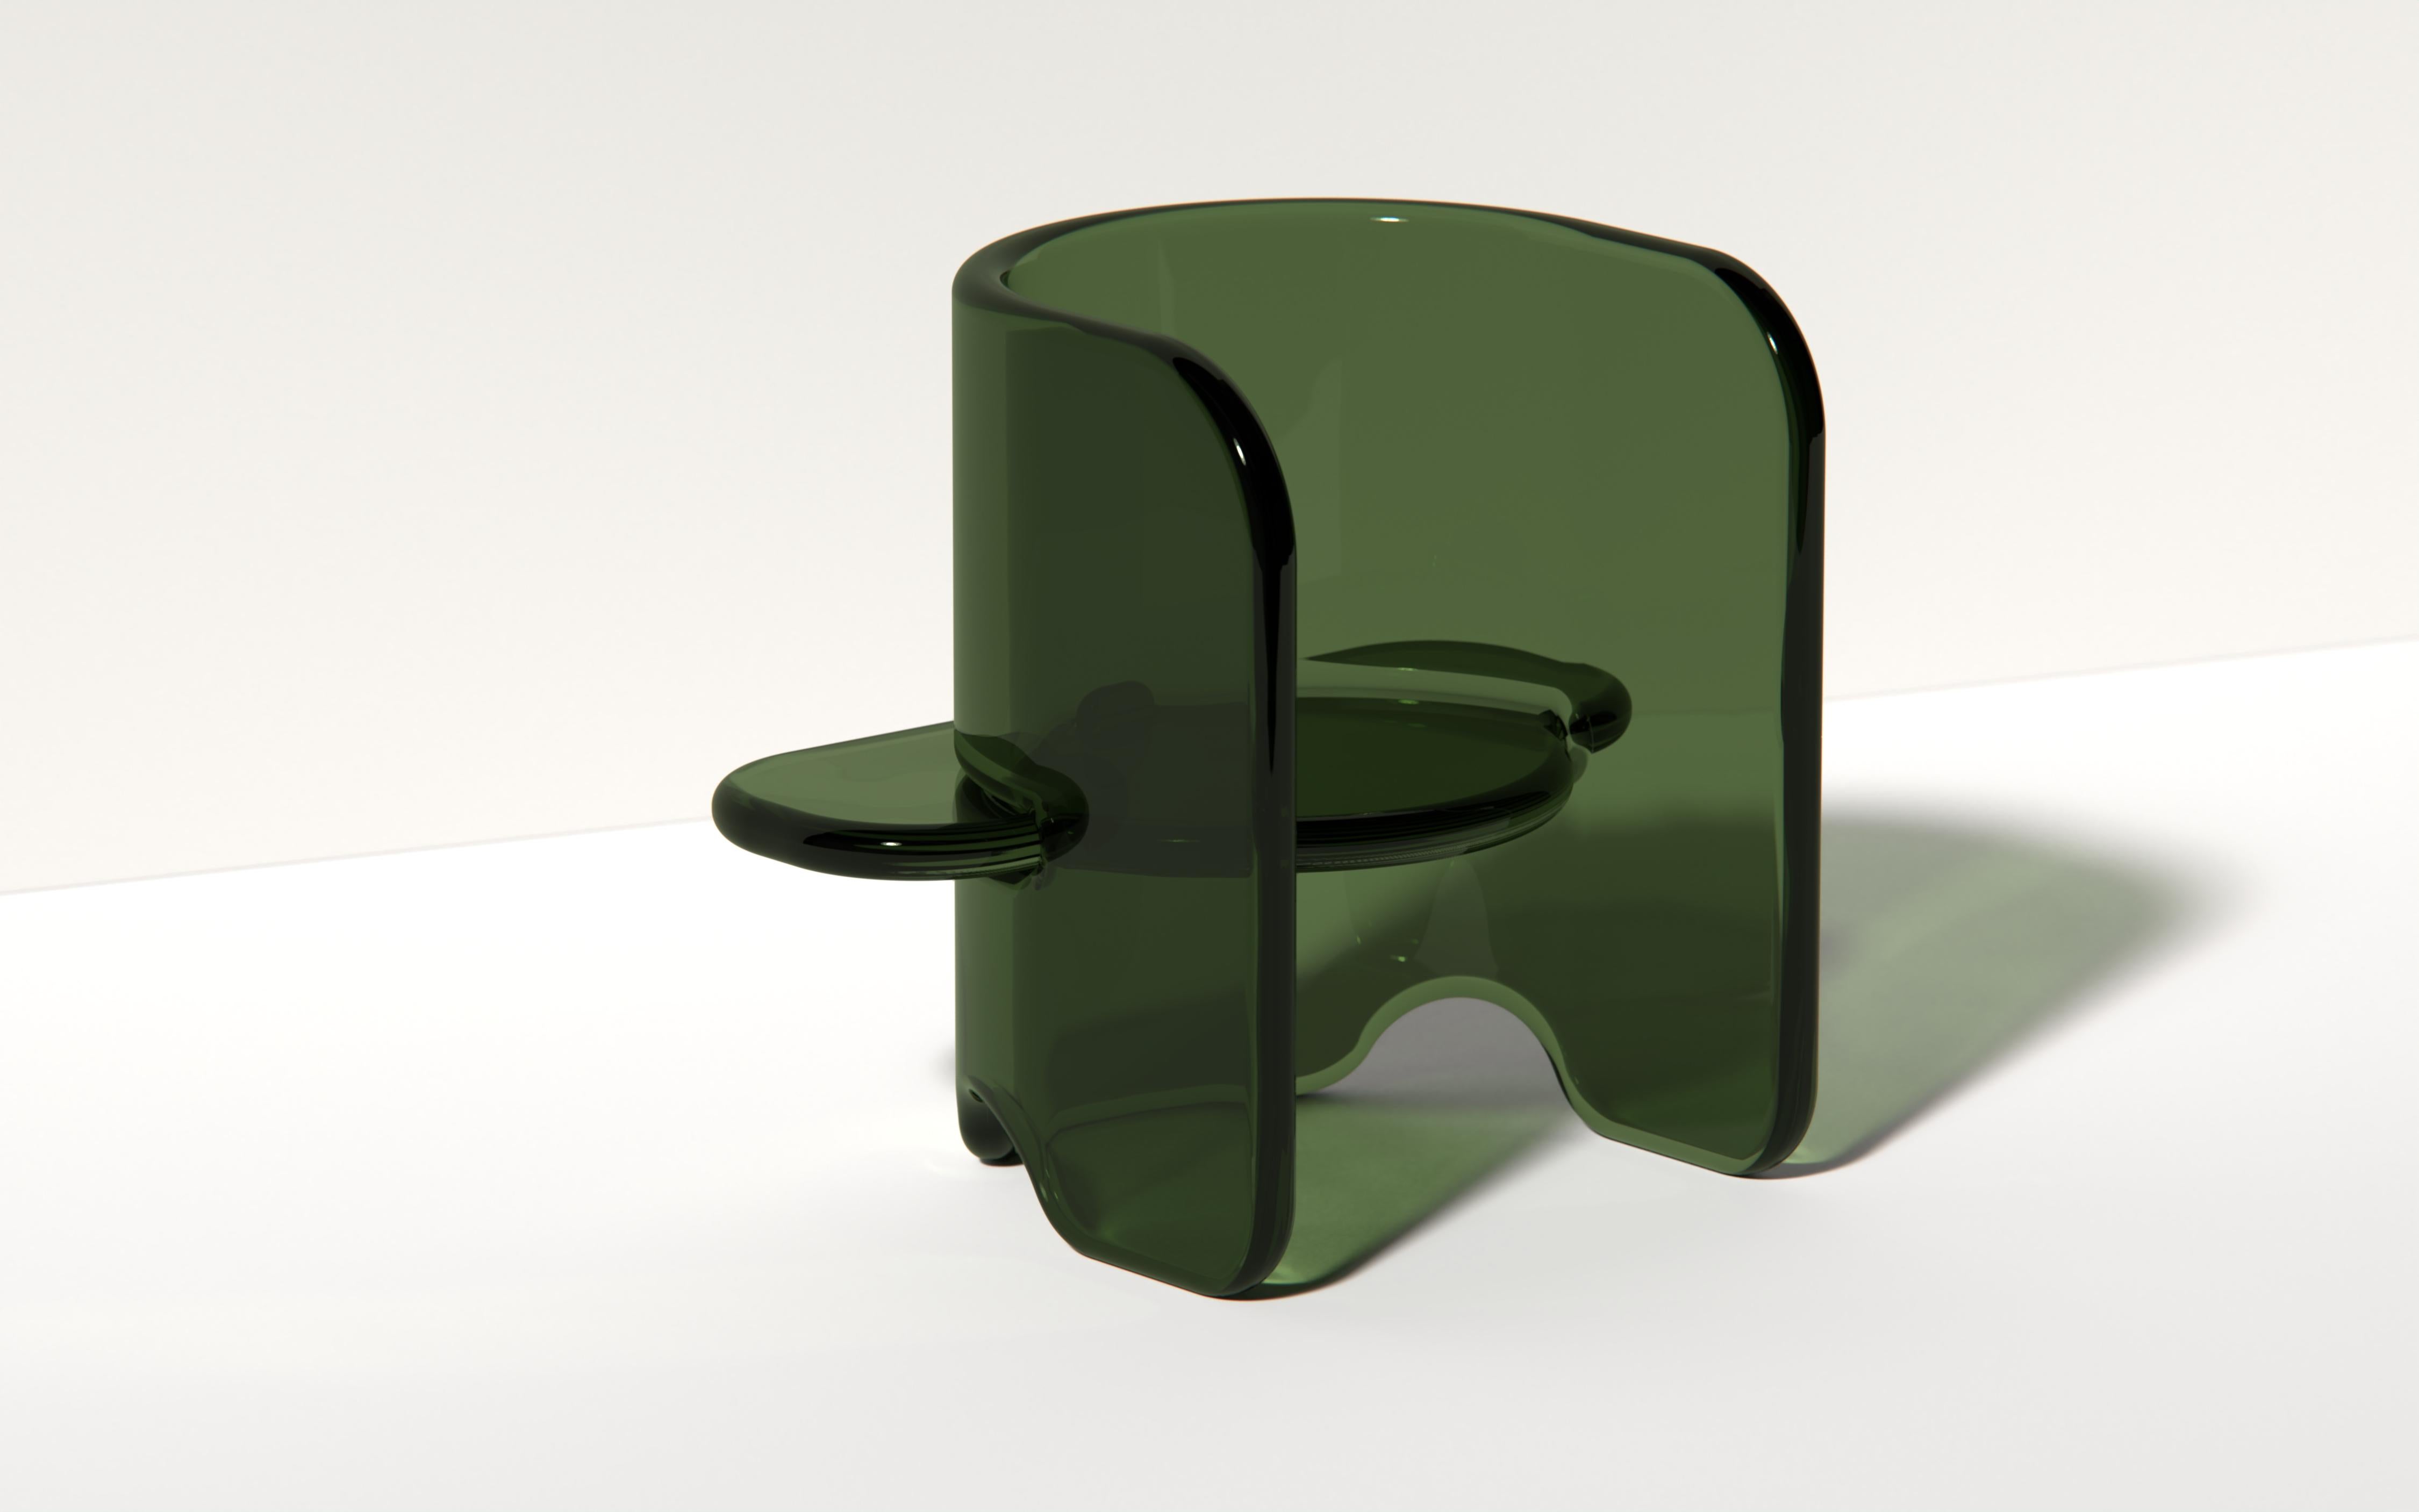 Suite de la série de meubles sculpturaux Plump. Les formes jouent sur l'effet que produit la résine lorsque la lumière est réfractée à travers les parties solides. La chaise n'est maintenue que par des encoches à chaque articulation. Il n'y a pas de